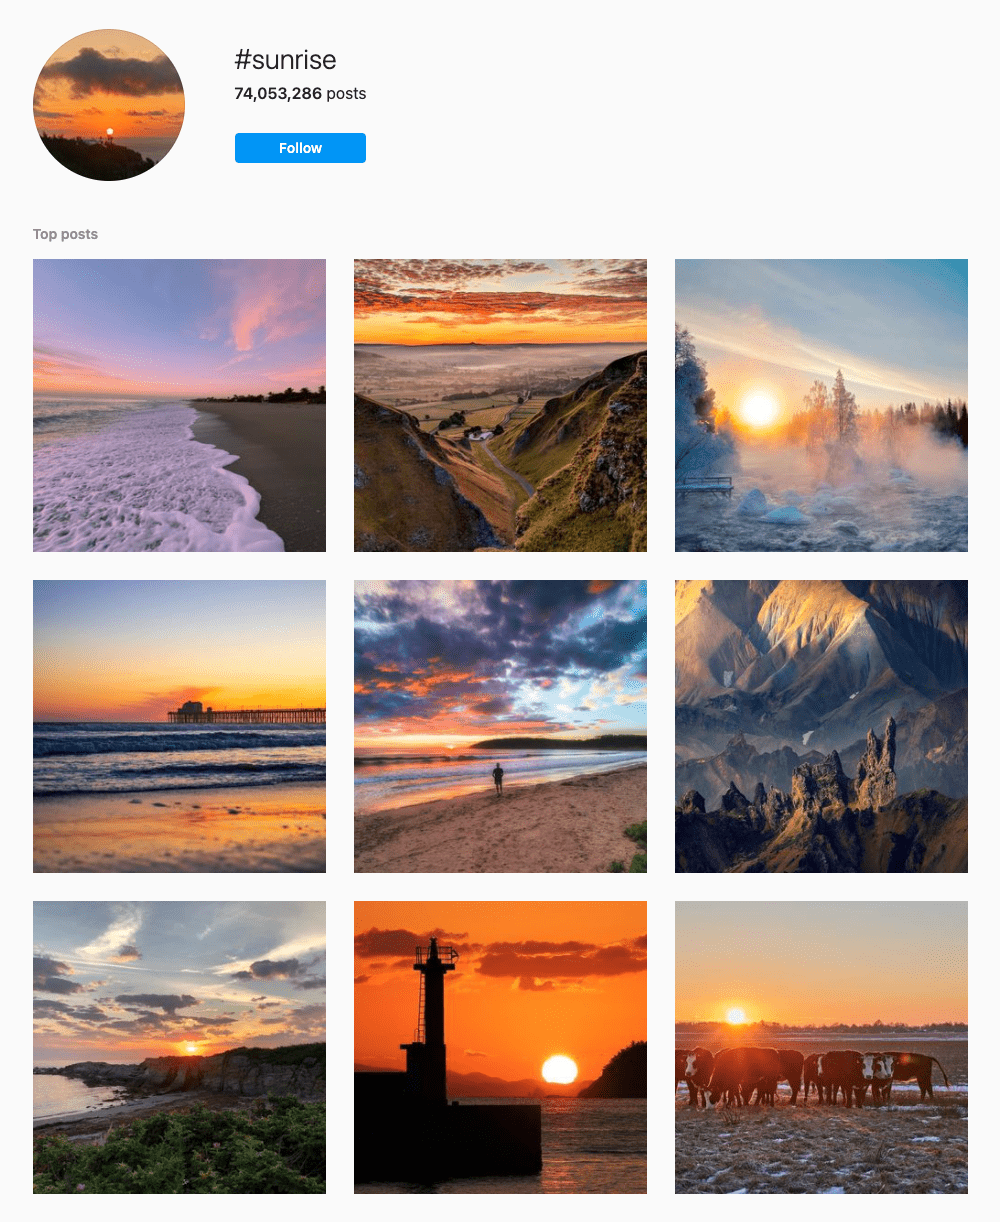 #sunrise Hashtags for Instagram